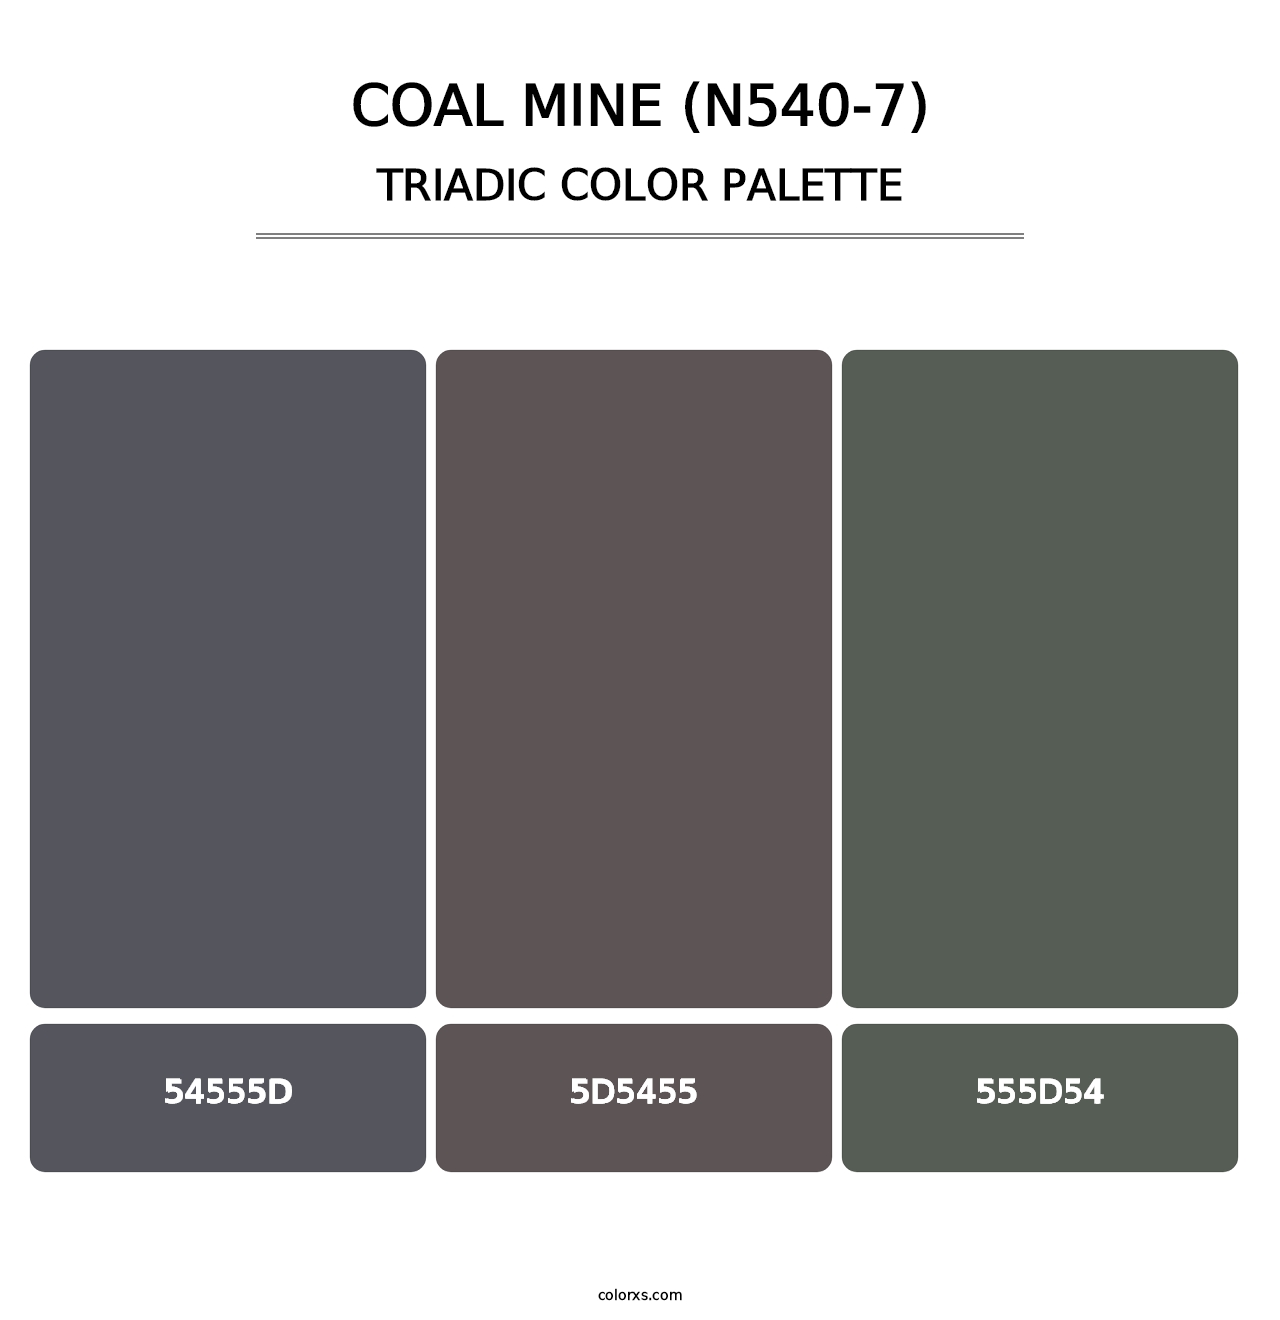 Coal Mine (N540-7) - Triadic Color Palette